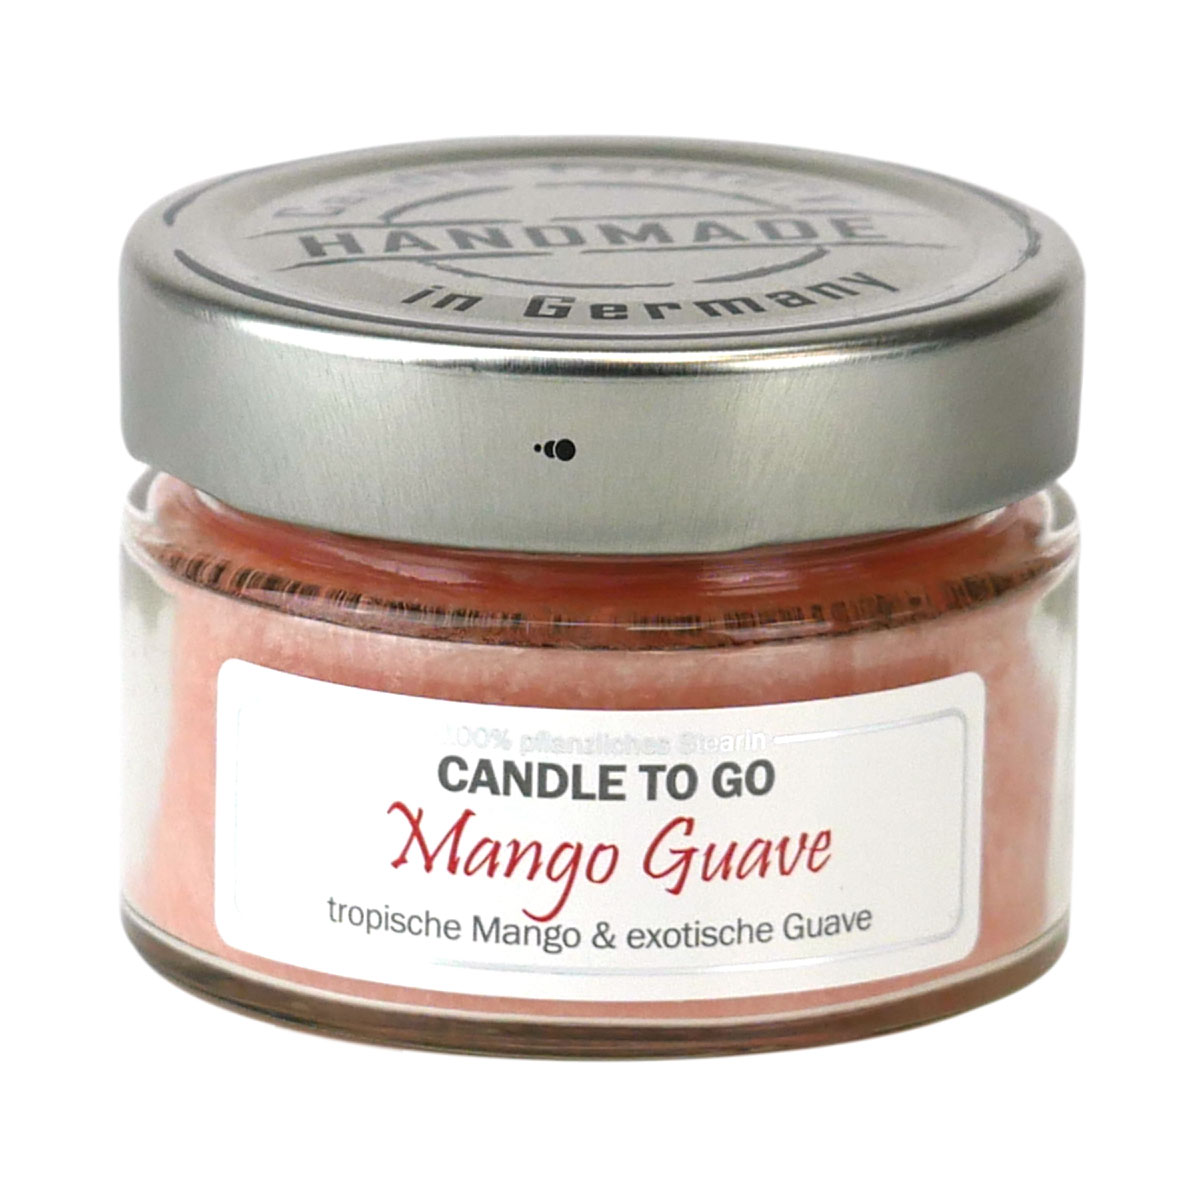 Mango Guave - Candle to Go die Duftkerze für unterwegs